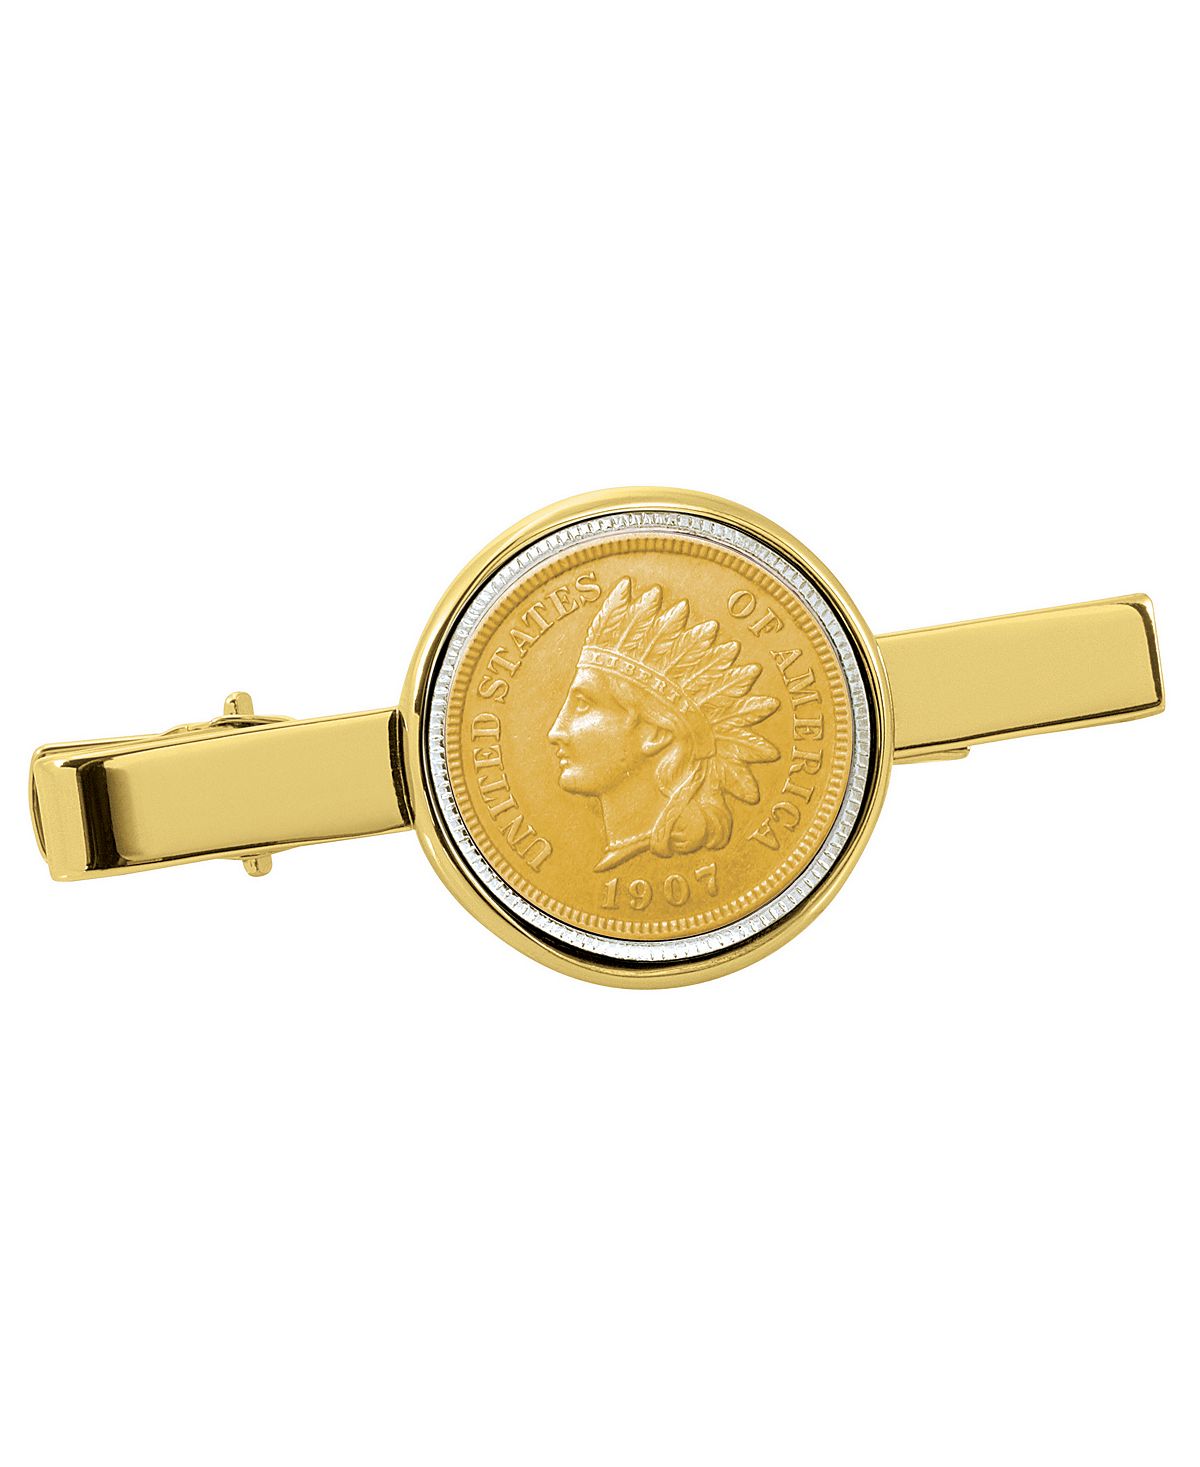 Позолоченный зажим для галстука в виде индийской монеты пенни American Coin Treasures 2021 maple leaf gold coin commonwealth queen s coin commemorative coin badge gift souvenir coins